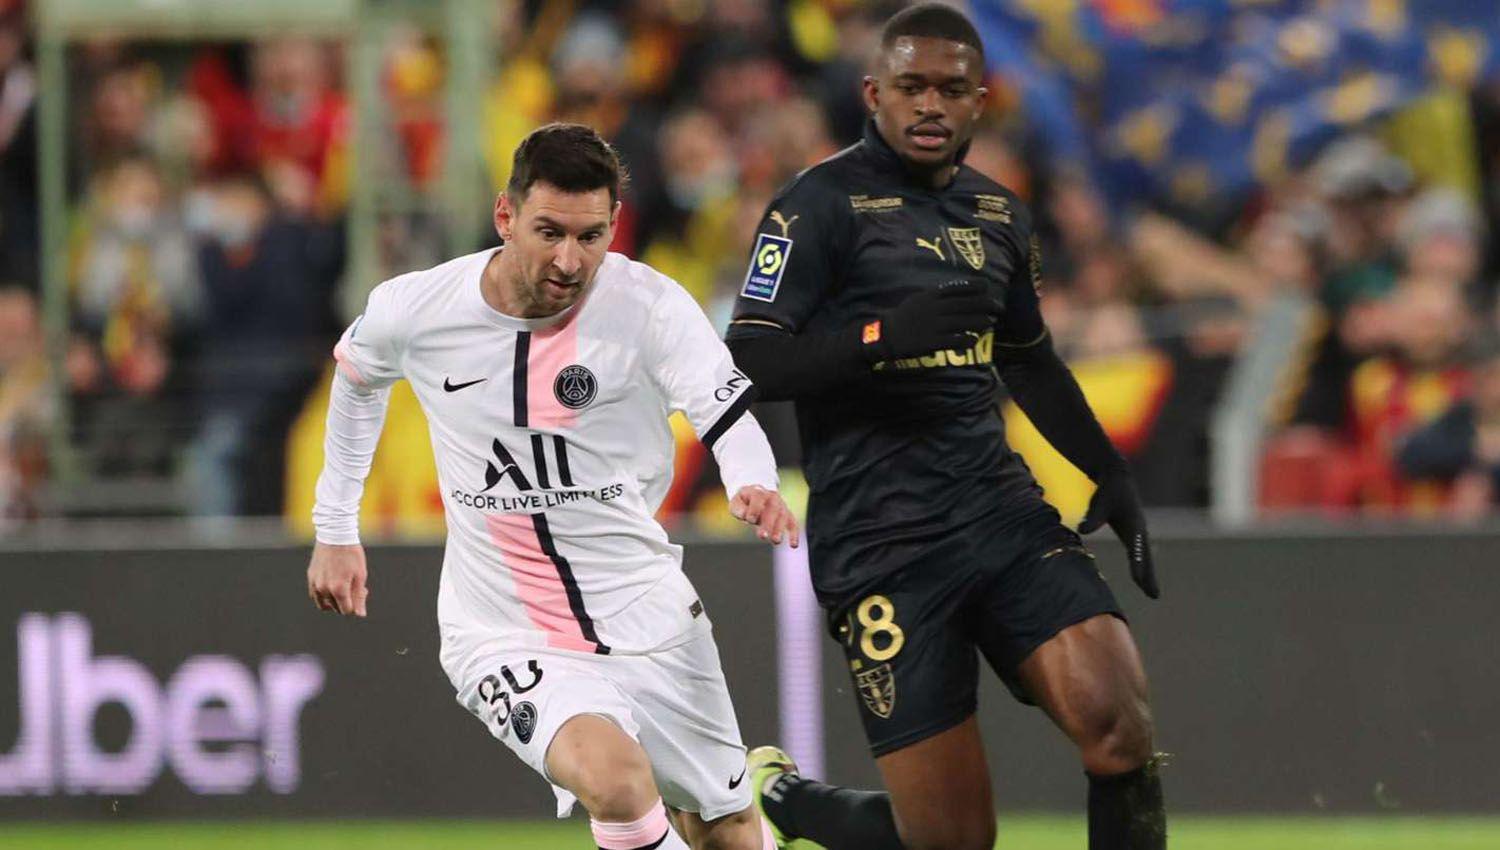 El Paris Saint Germain de Messi rescatoacute un empate en su visita al Lens y sigue liacuteder en la Ligue 1